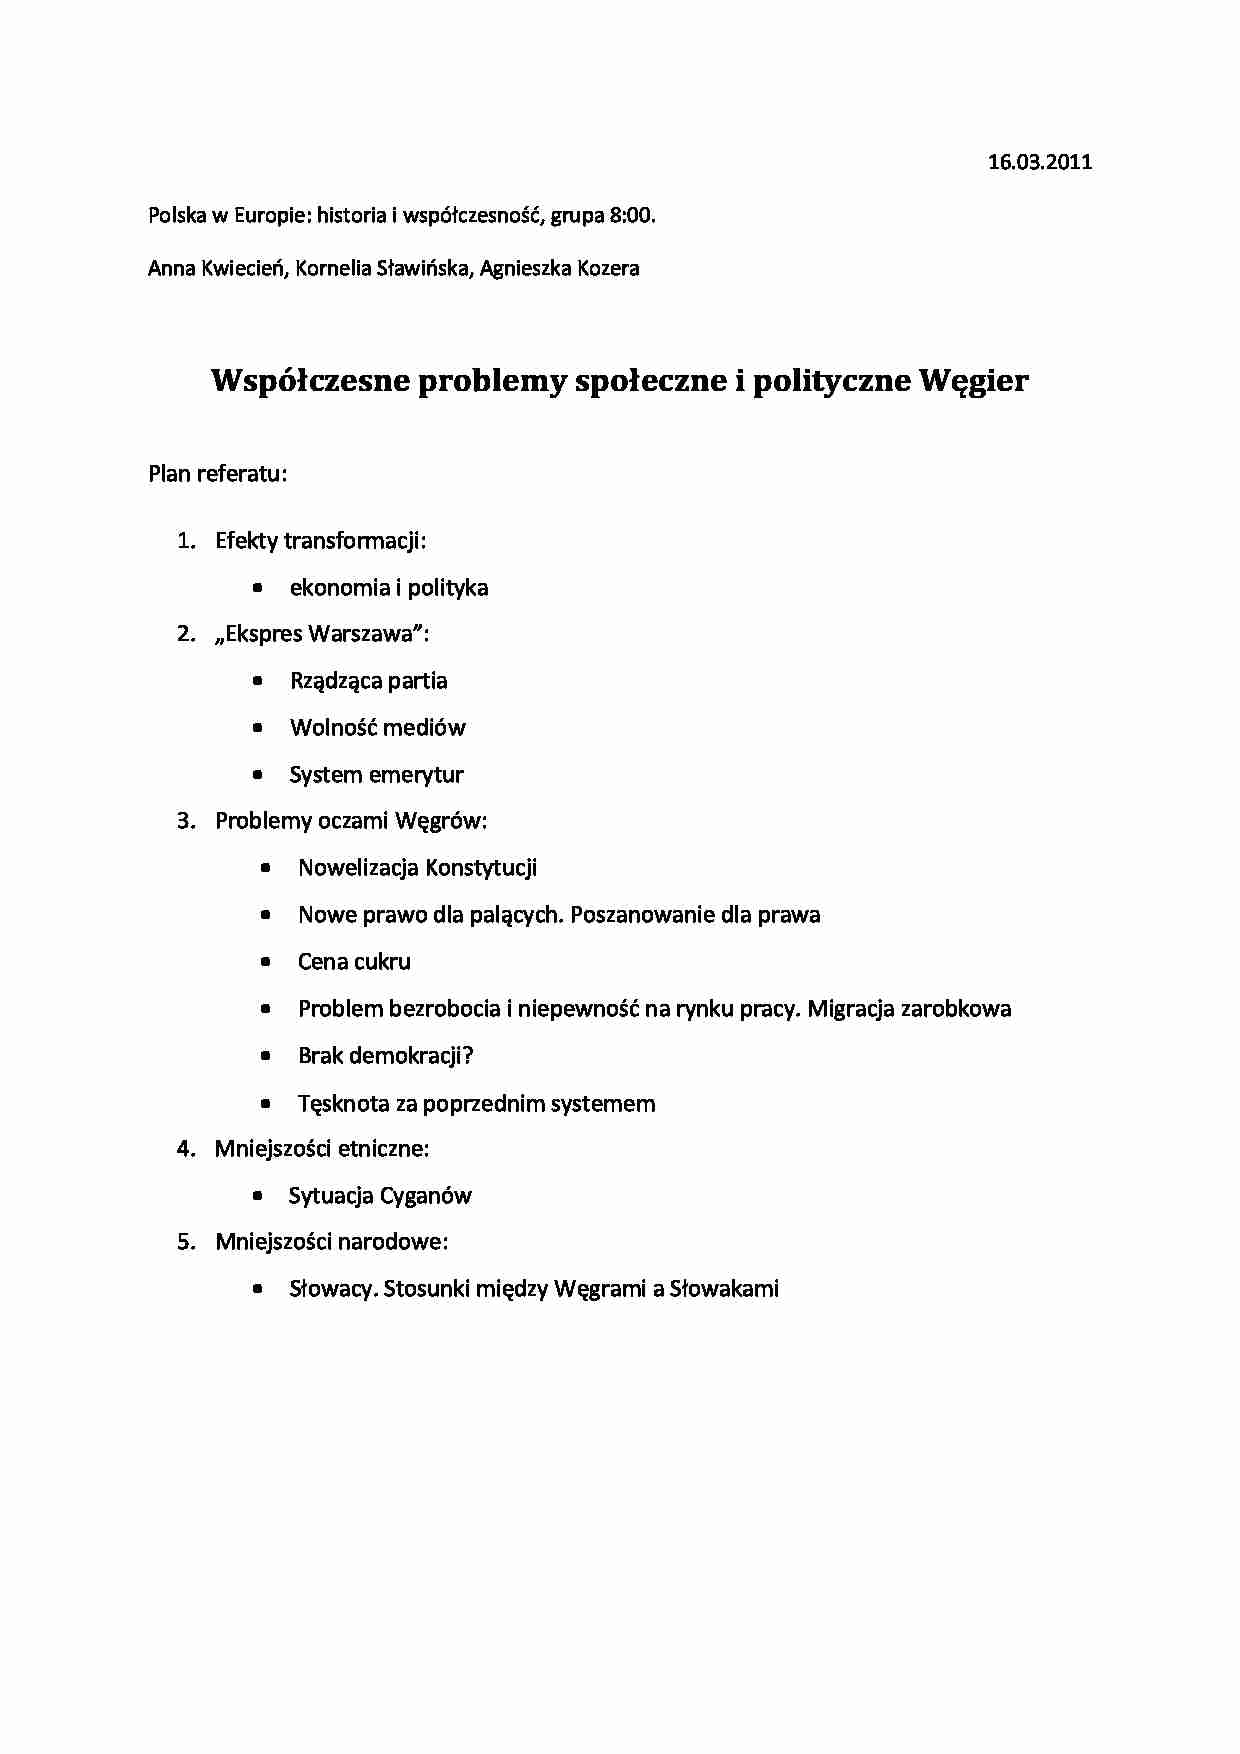 Współczesne problemy społeczne i polityczne Węgier-opracowanie - strona 1